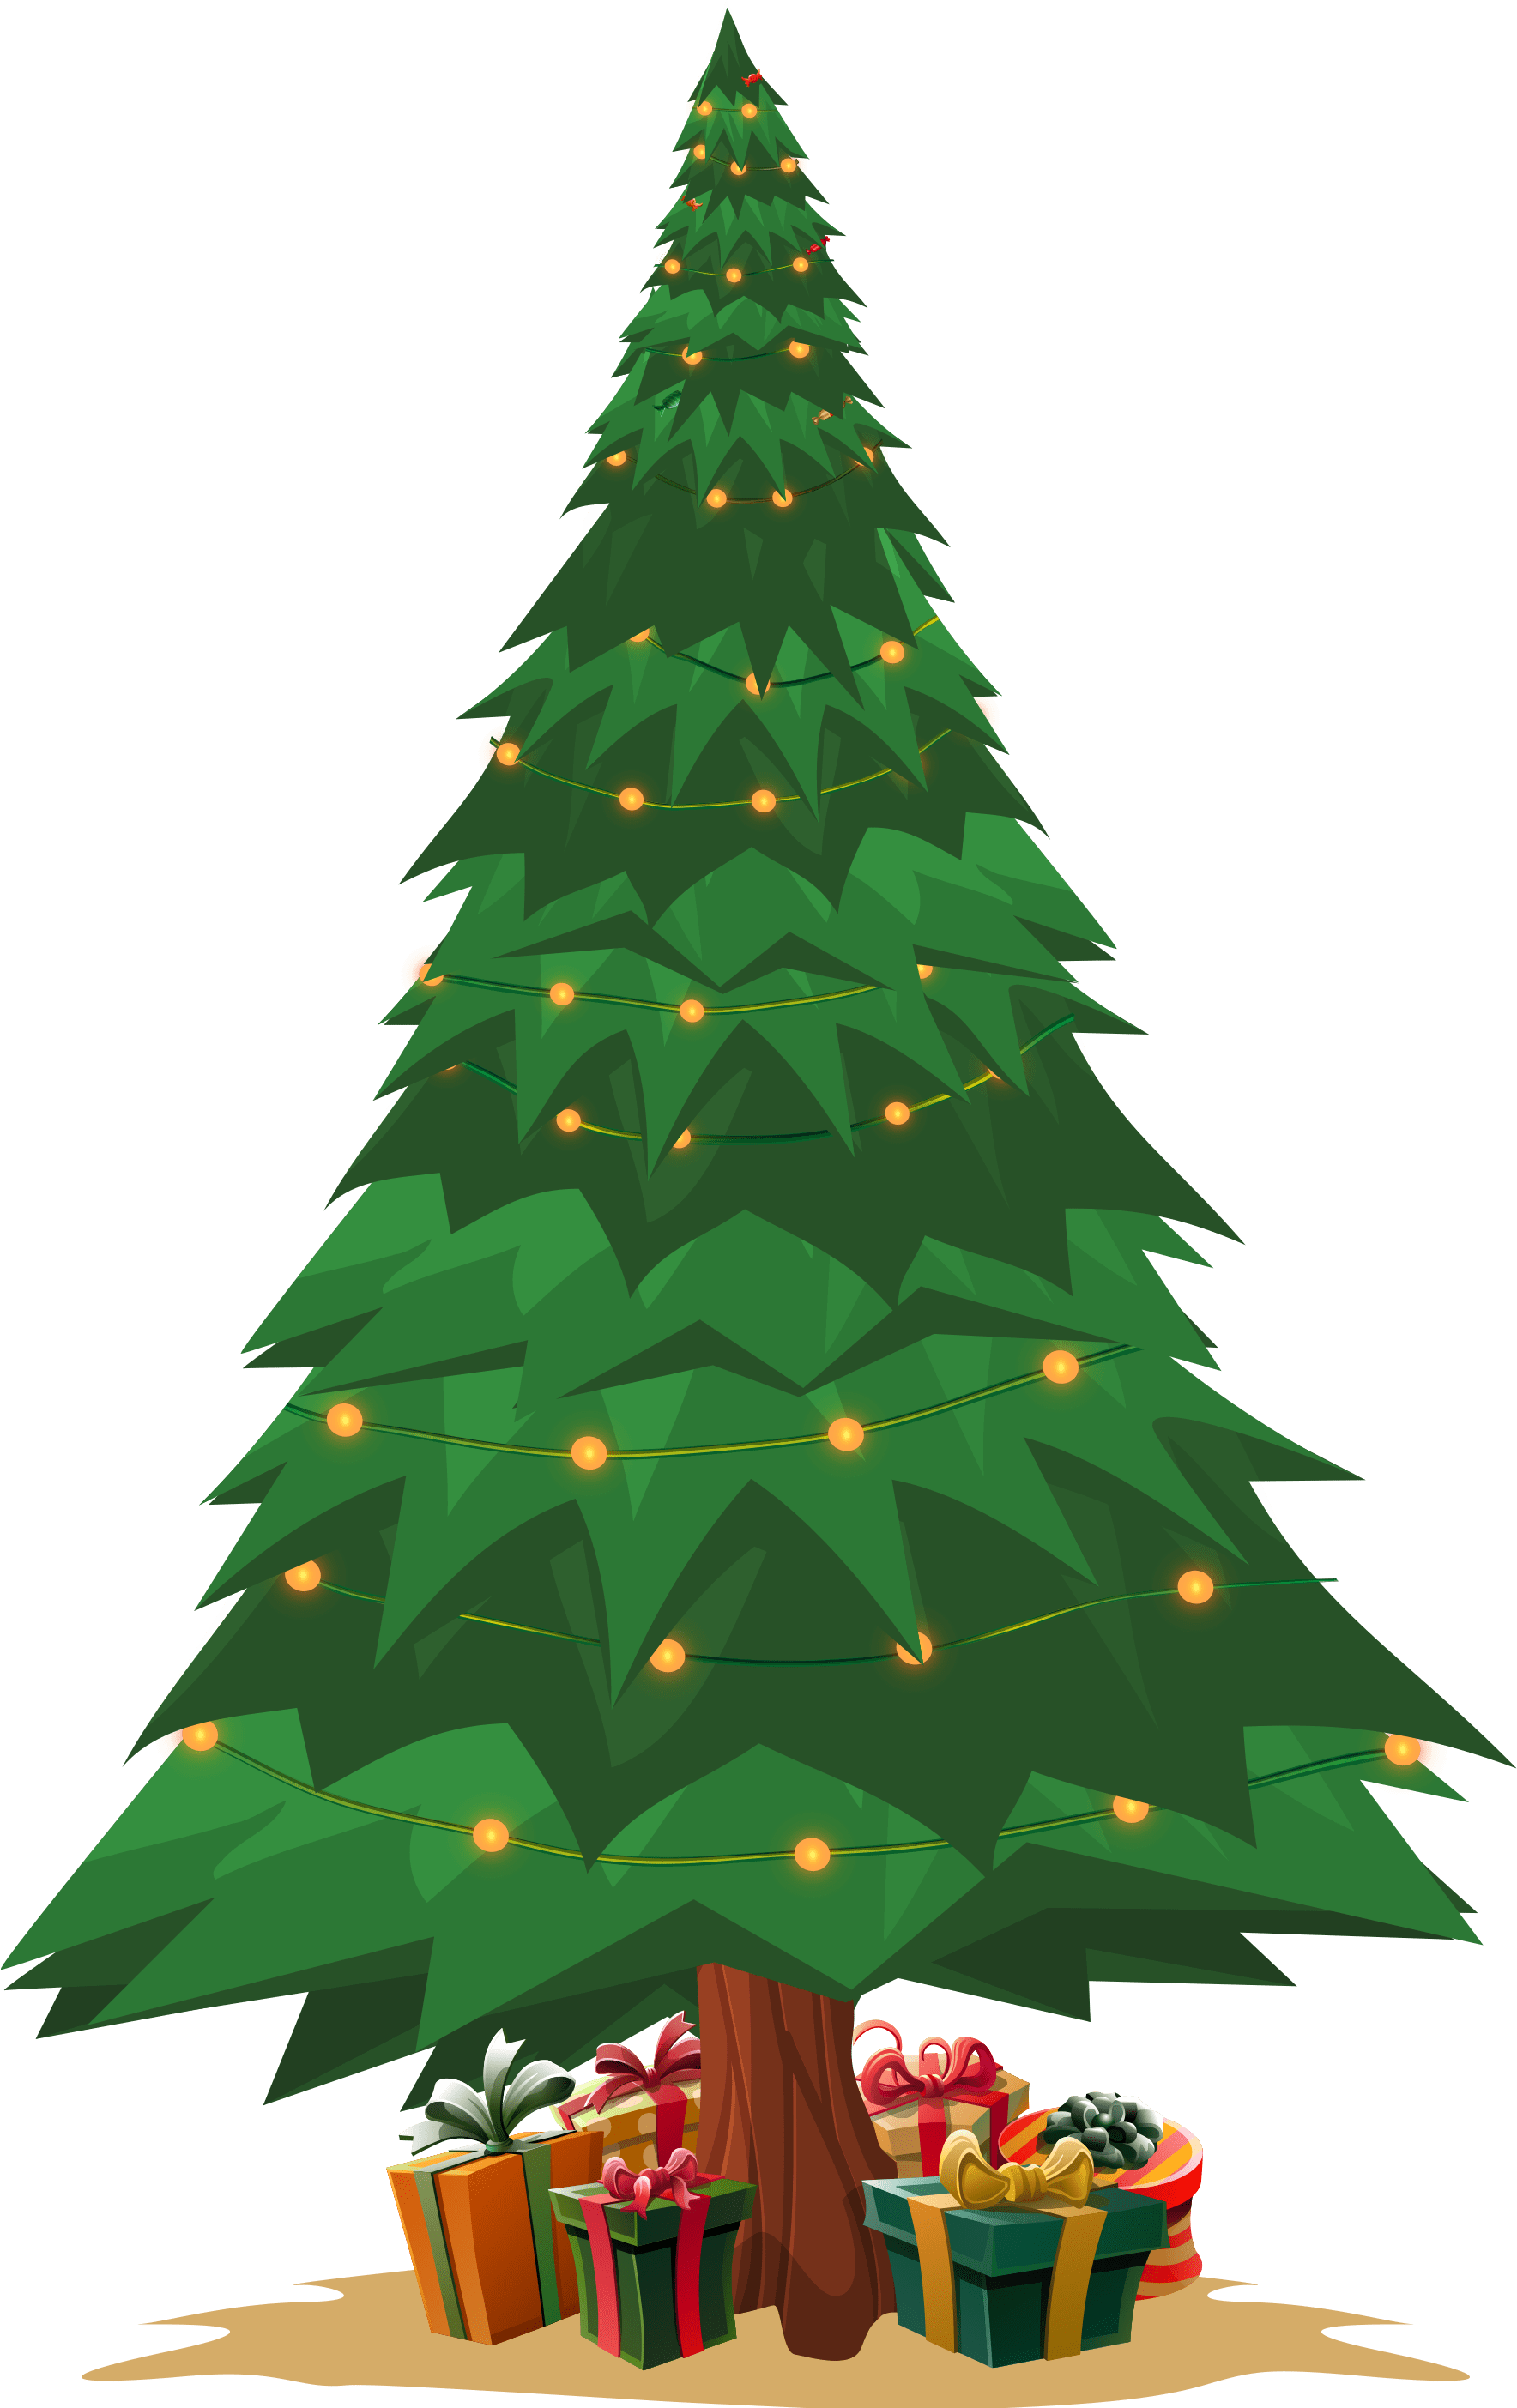 Tree-nolights-nostar-min LP Christmas 2021 - Fair Go Casino